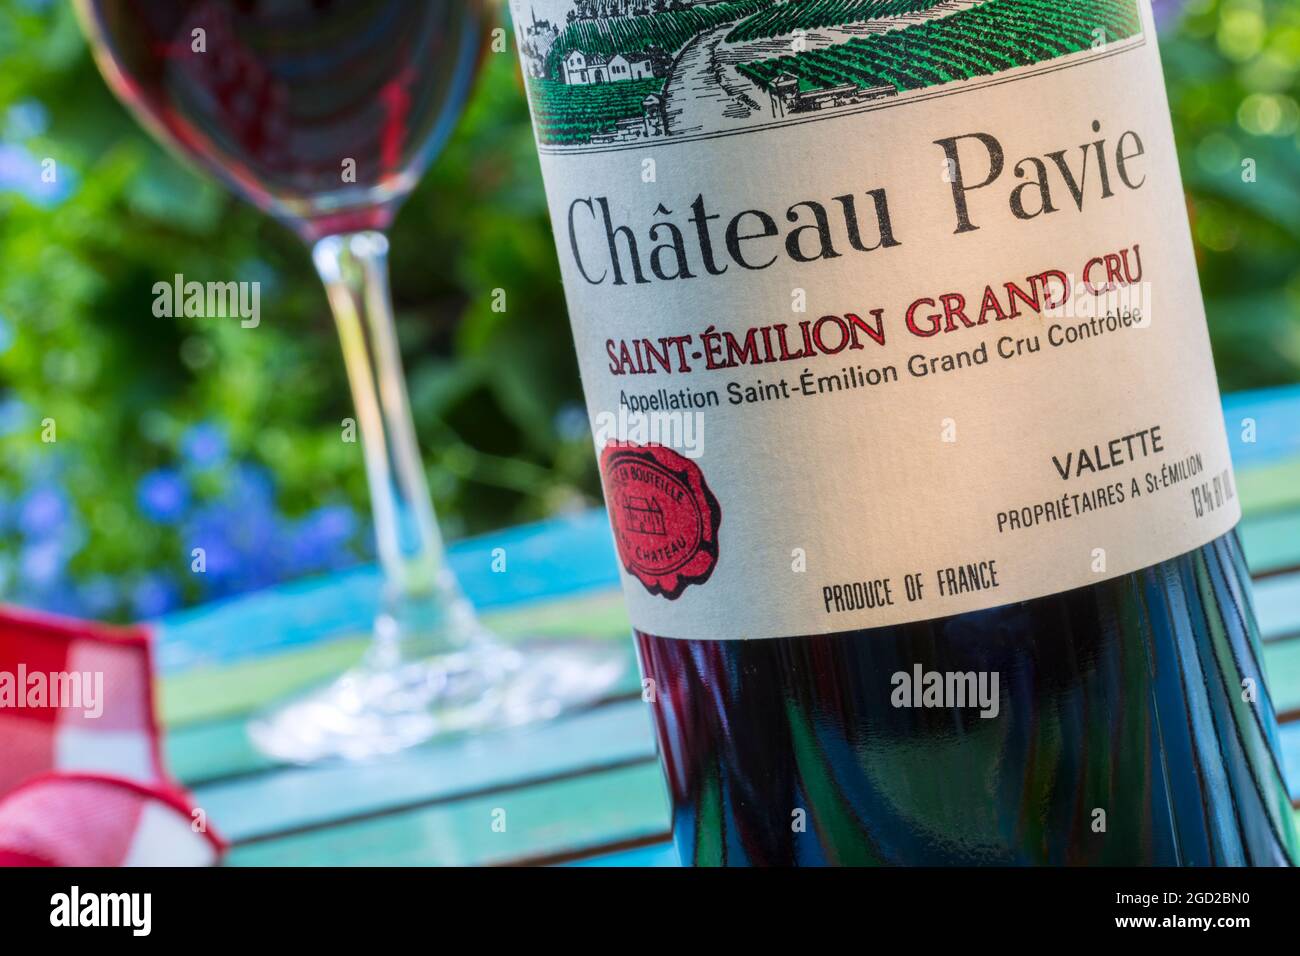 Chateau Pavie SAINT Émilion Flasche & Glas Grand Cru St-Emilion Bordeaux Französische Weinprobe im Freien auf dem Tisch auf der Gartenterrasse Stockfoto